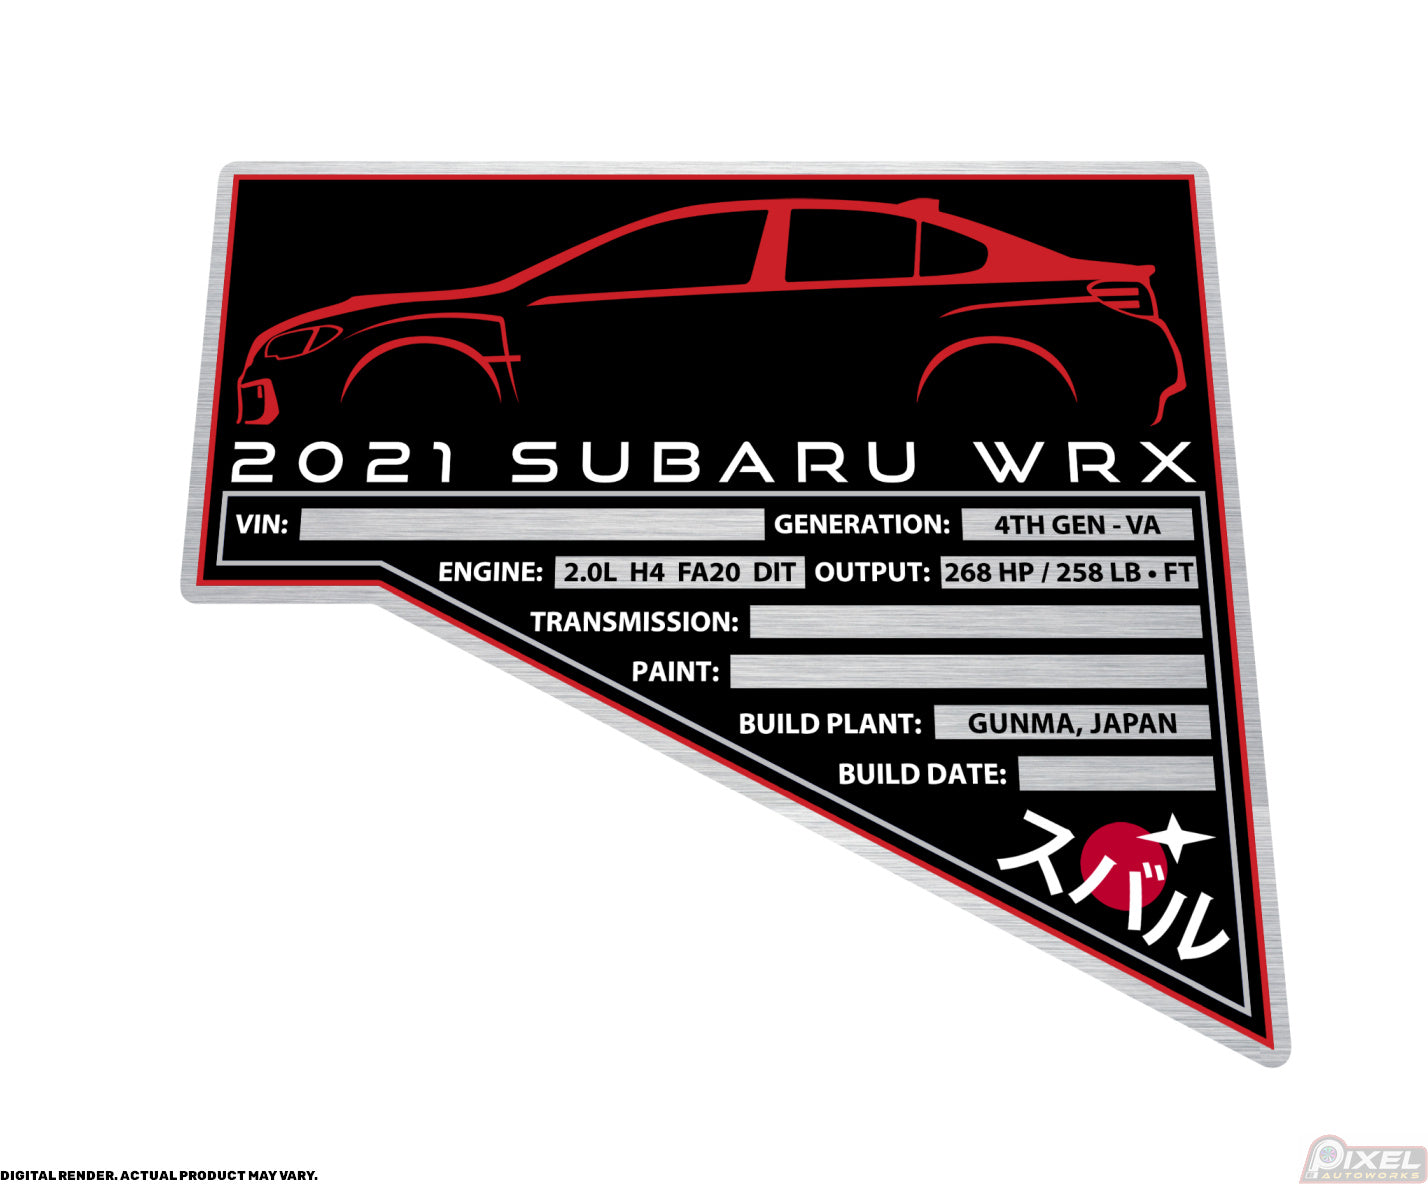 2021 SUBARU WRX Engine Bay Build Plaque